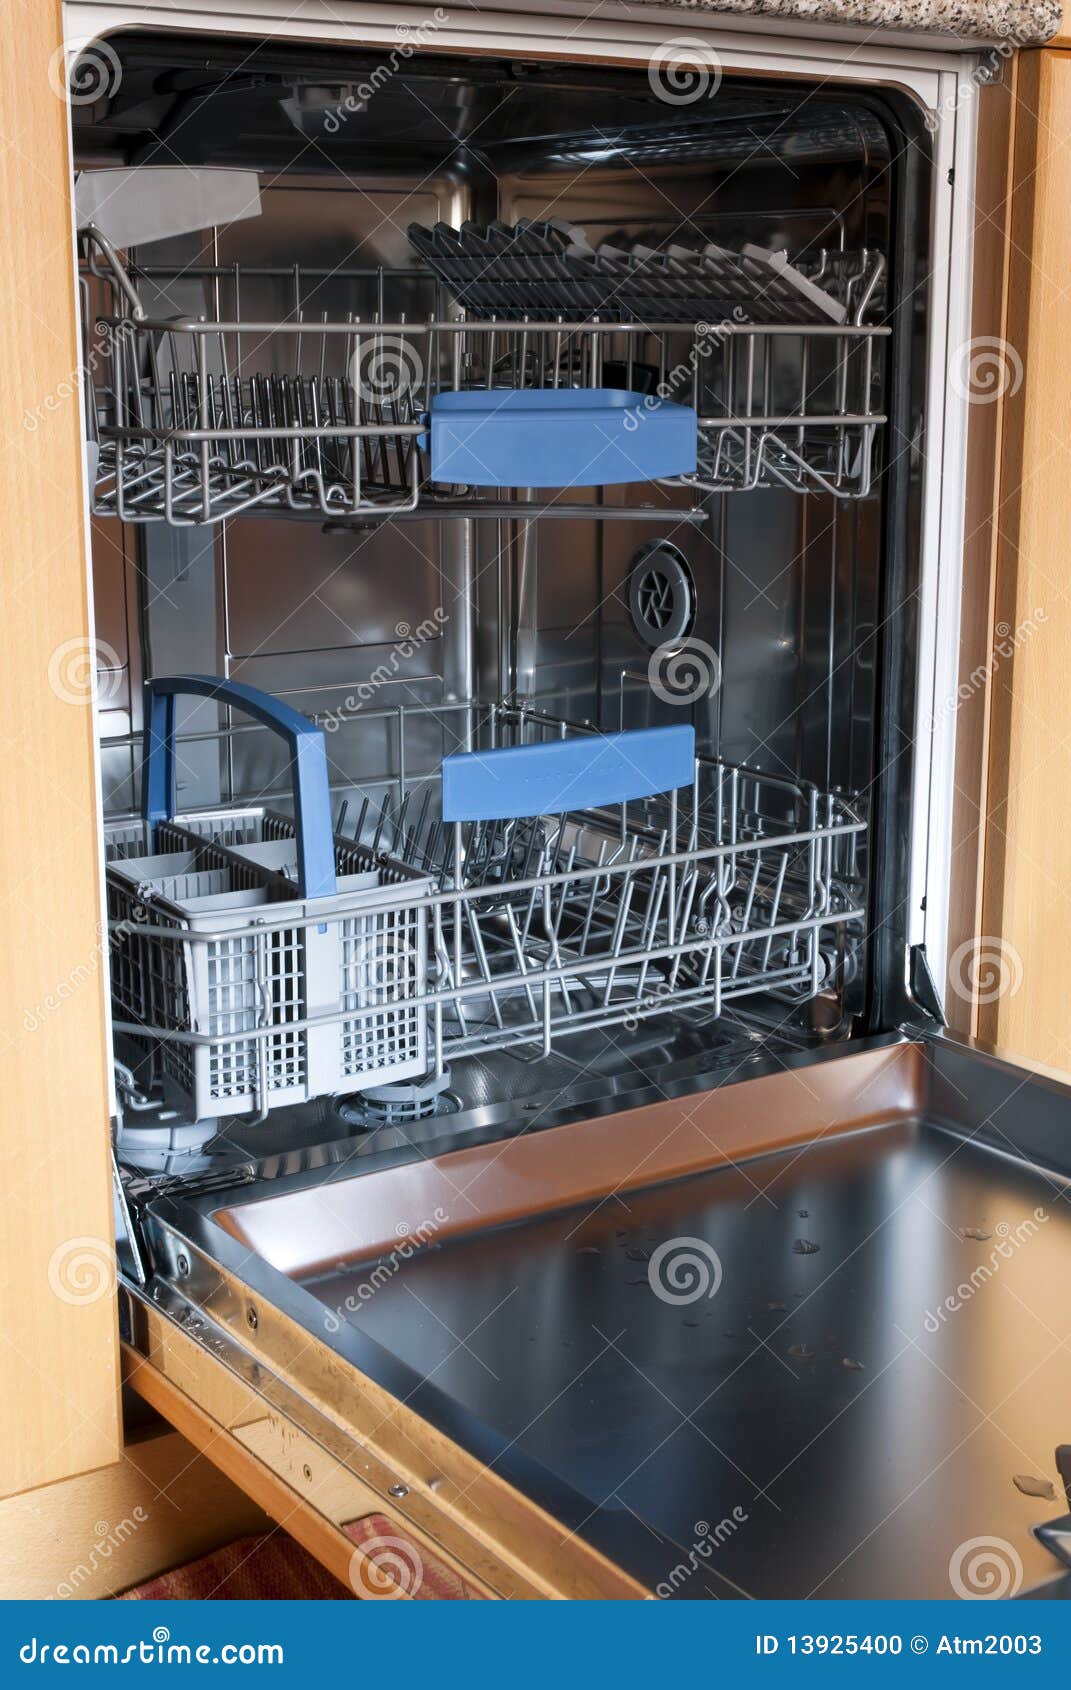 empty kitchen dishwasher